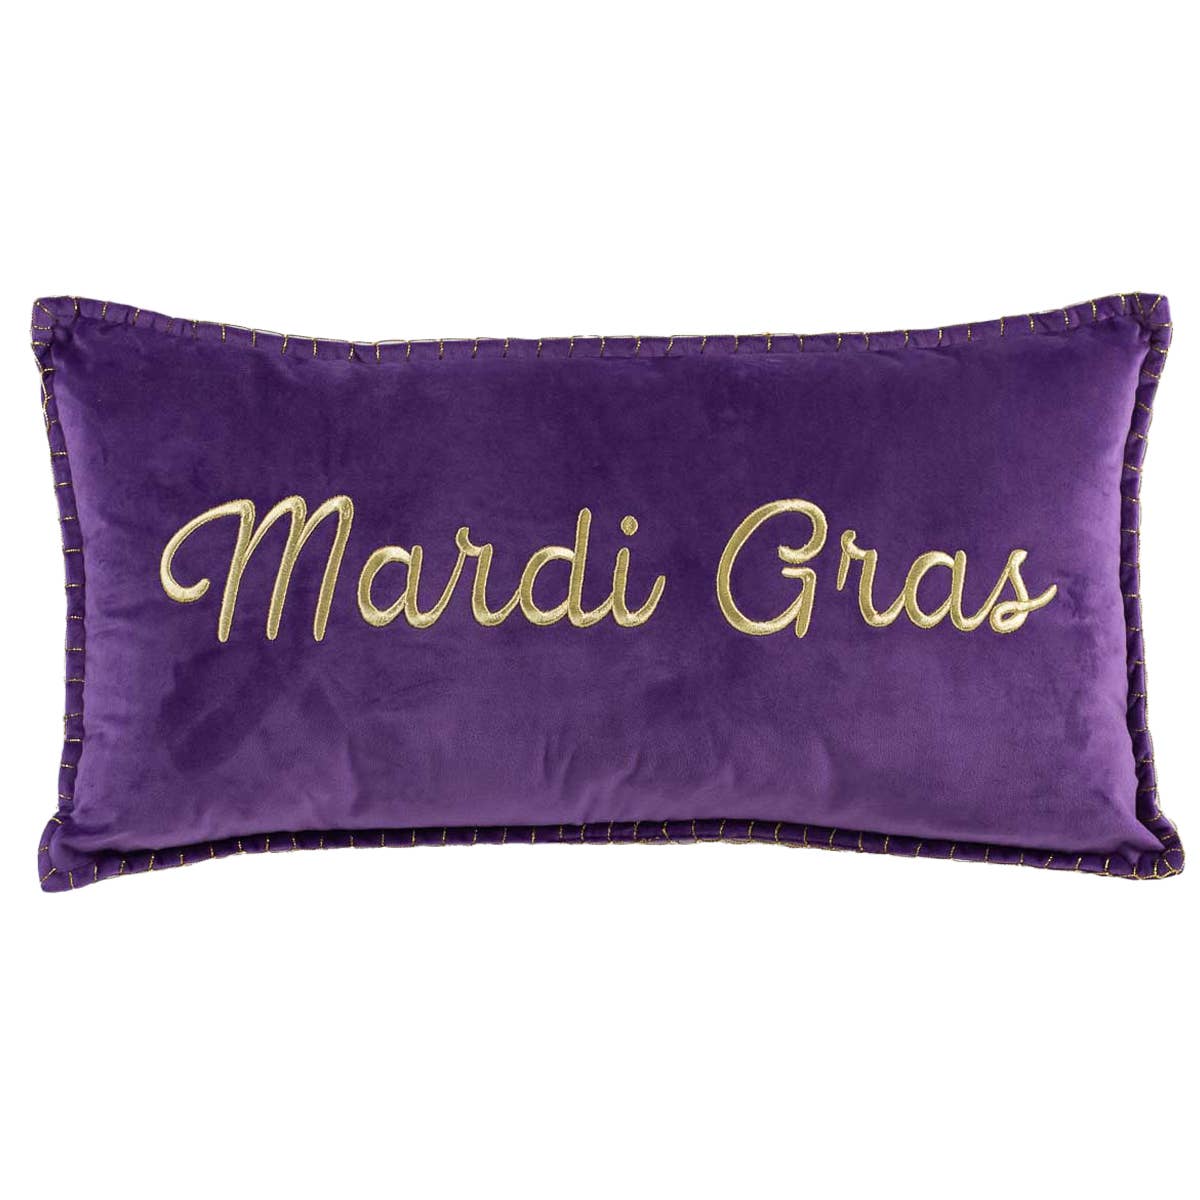 Royal Mardi Gras Lumbar Pillow   Purple/Gold   13x24